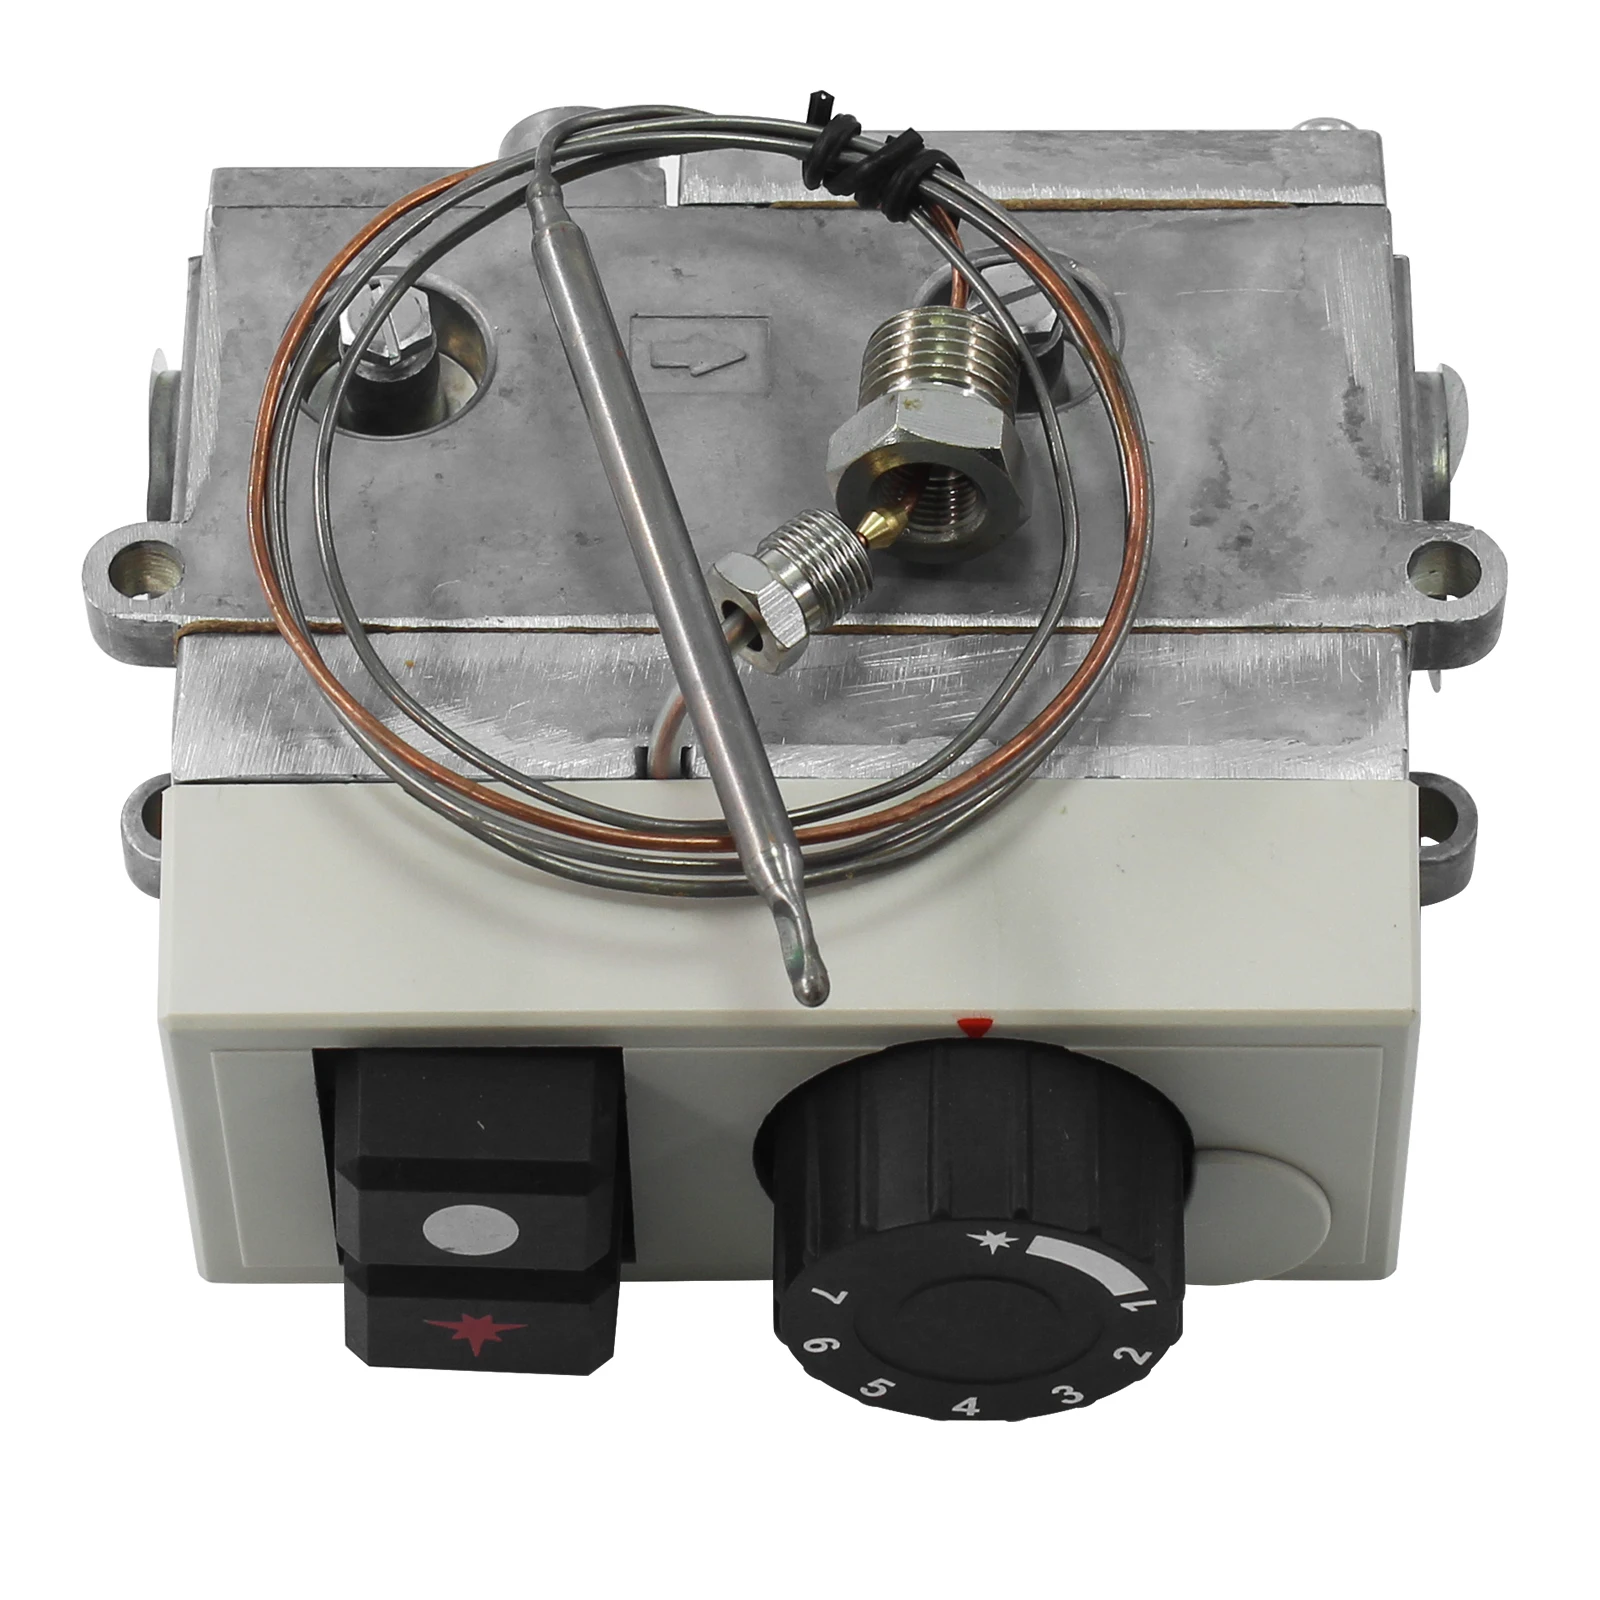 

Клапан управления термостатом пропанового газа, модель 710, управляющий клапан minisit gas термостат фритюрницы